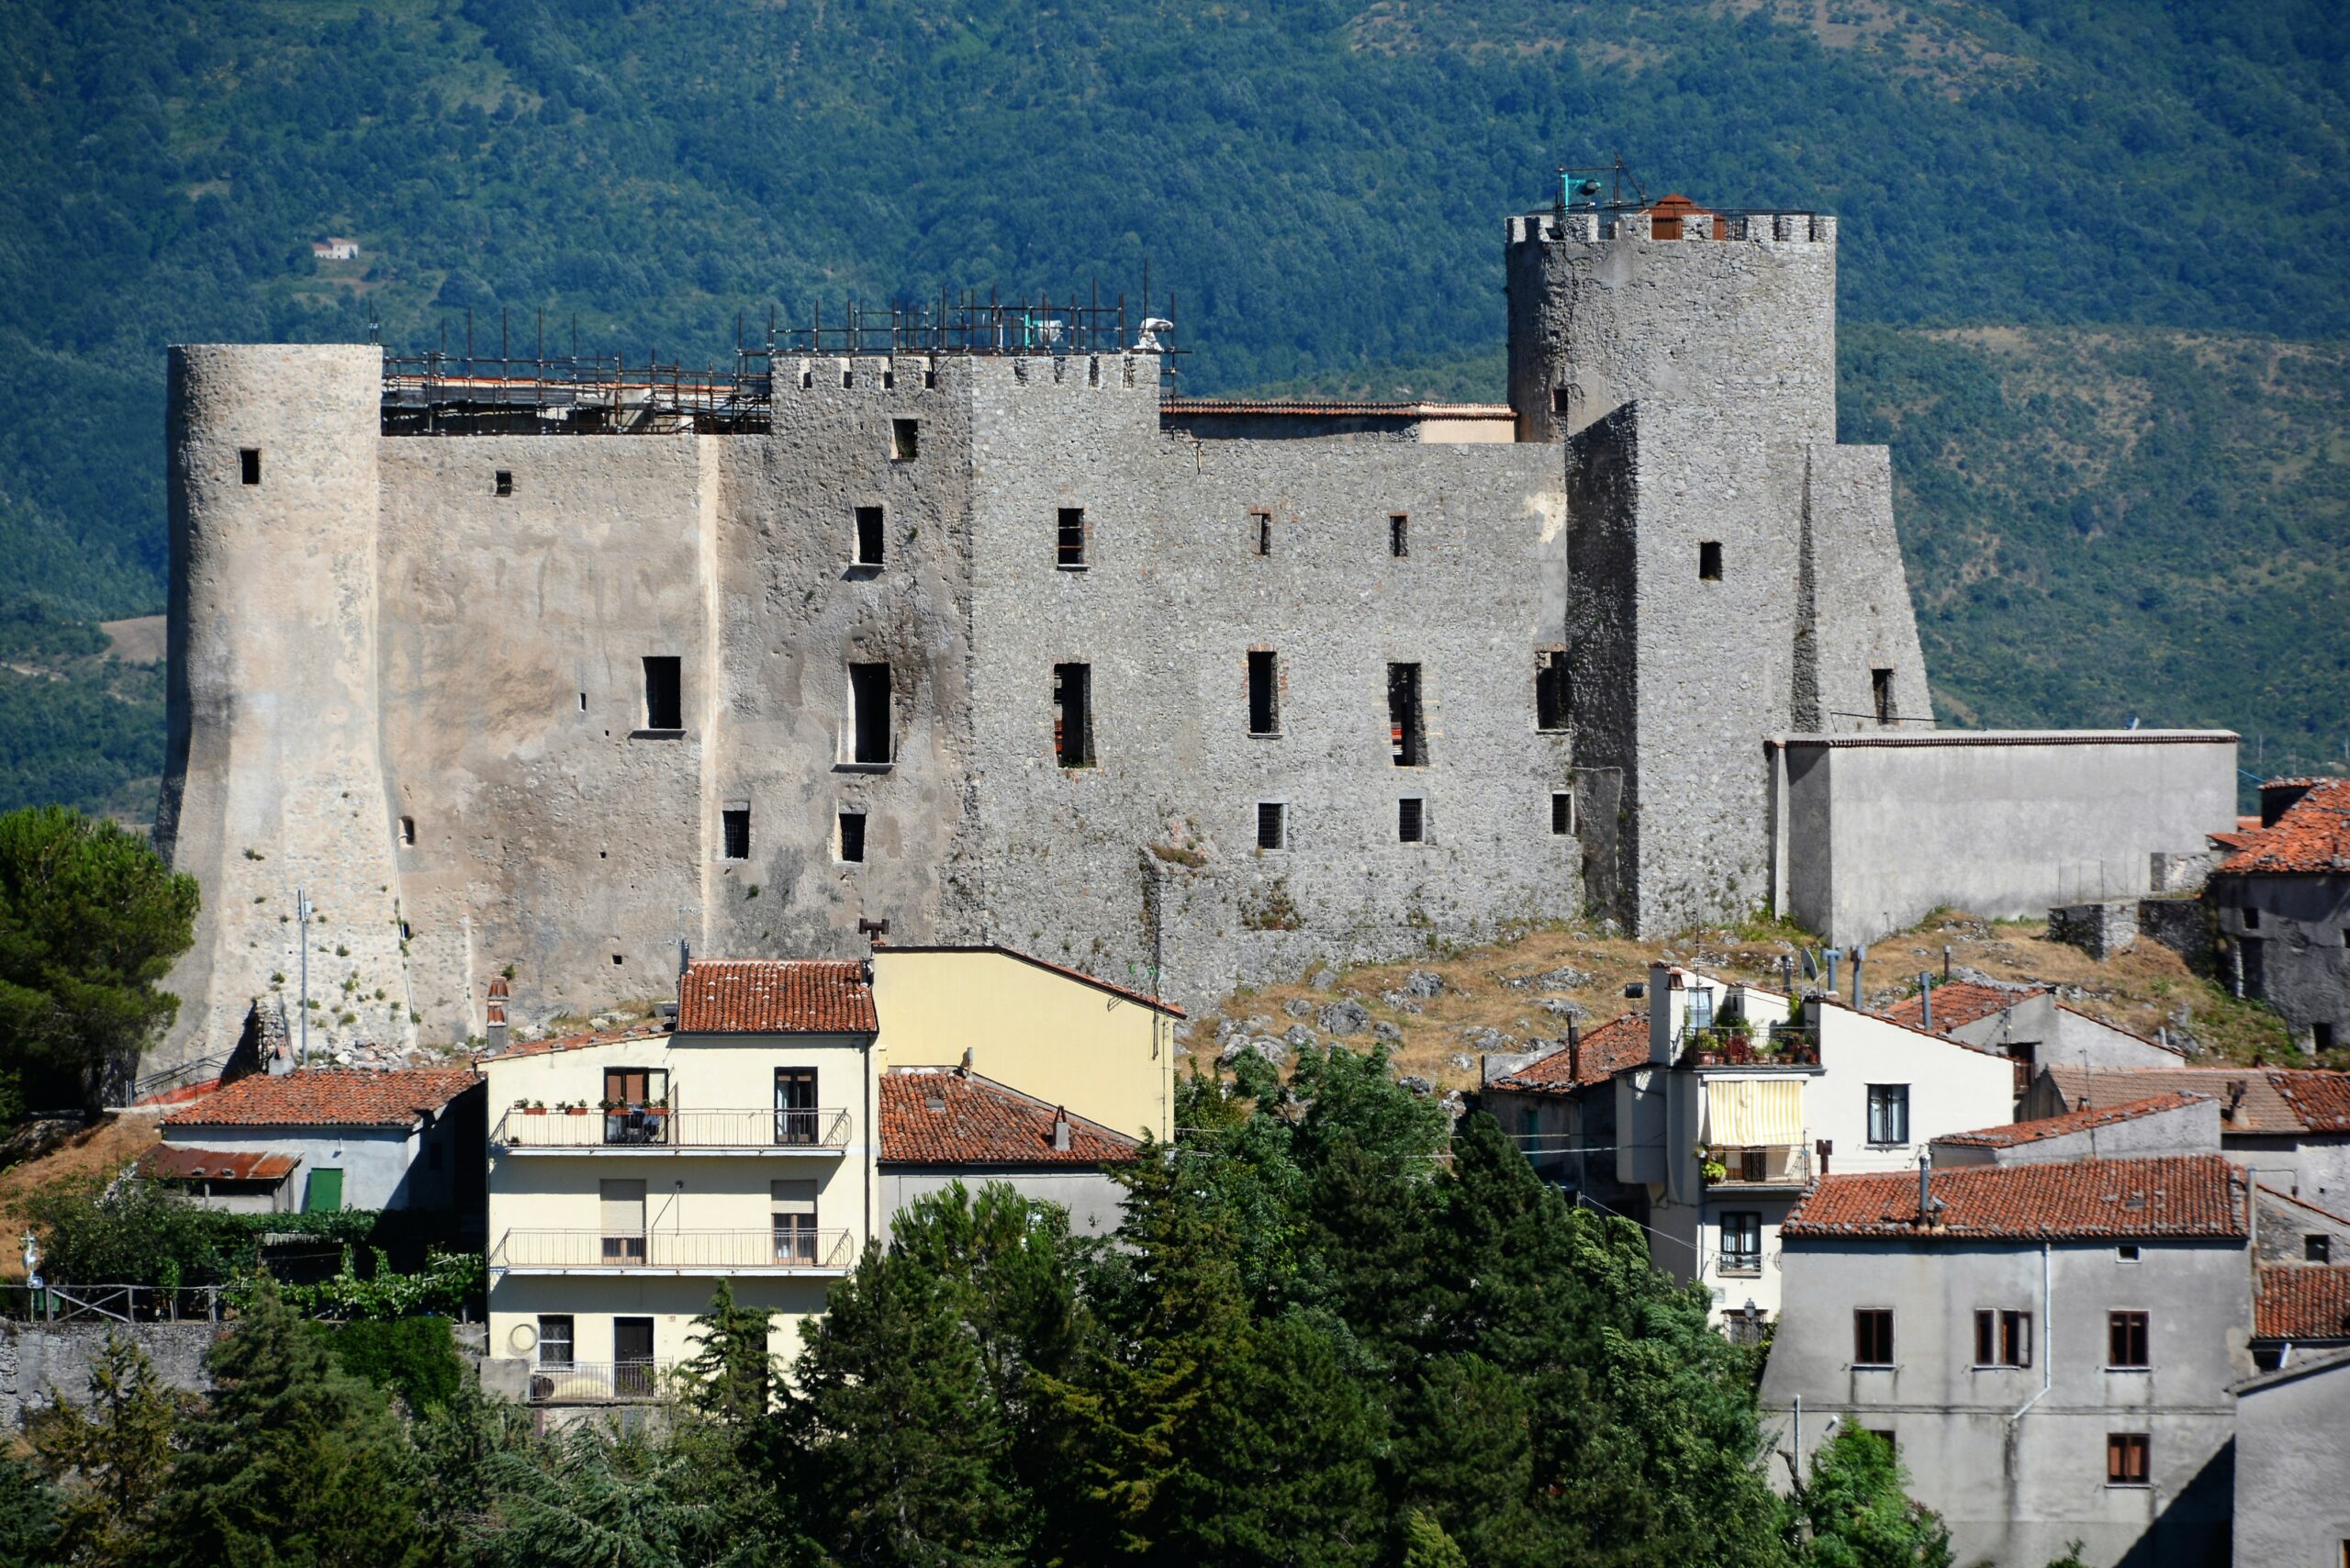 Sposarsi in un castello: a Moliterno (PZ) si può